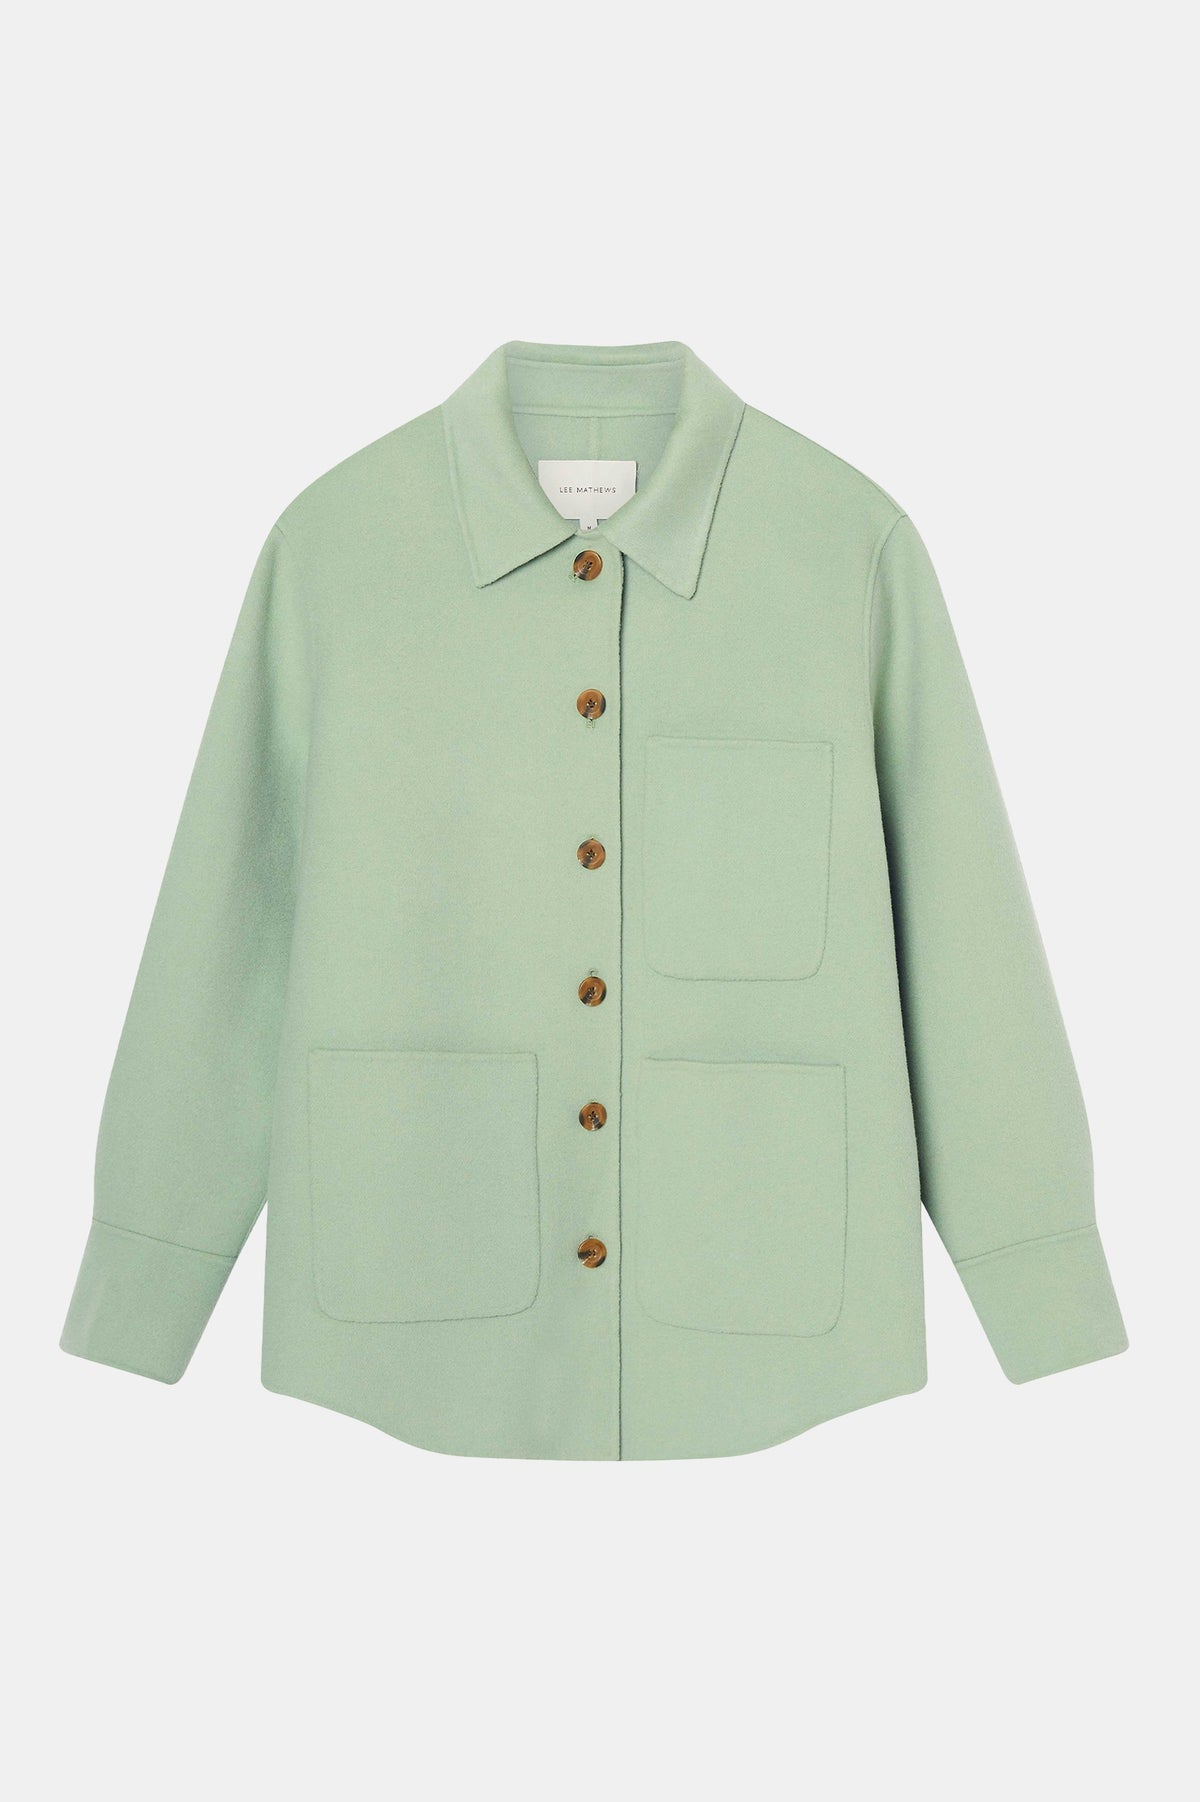 Florentine Cashmere Shirt Jacket in Seafoam